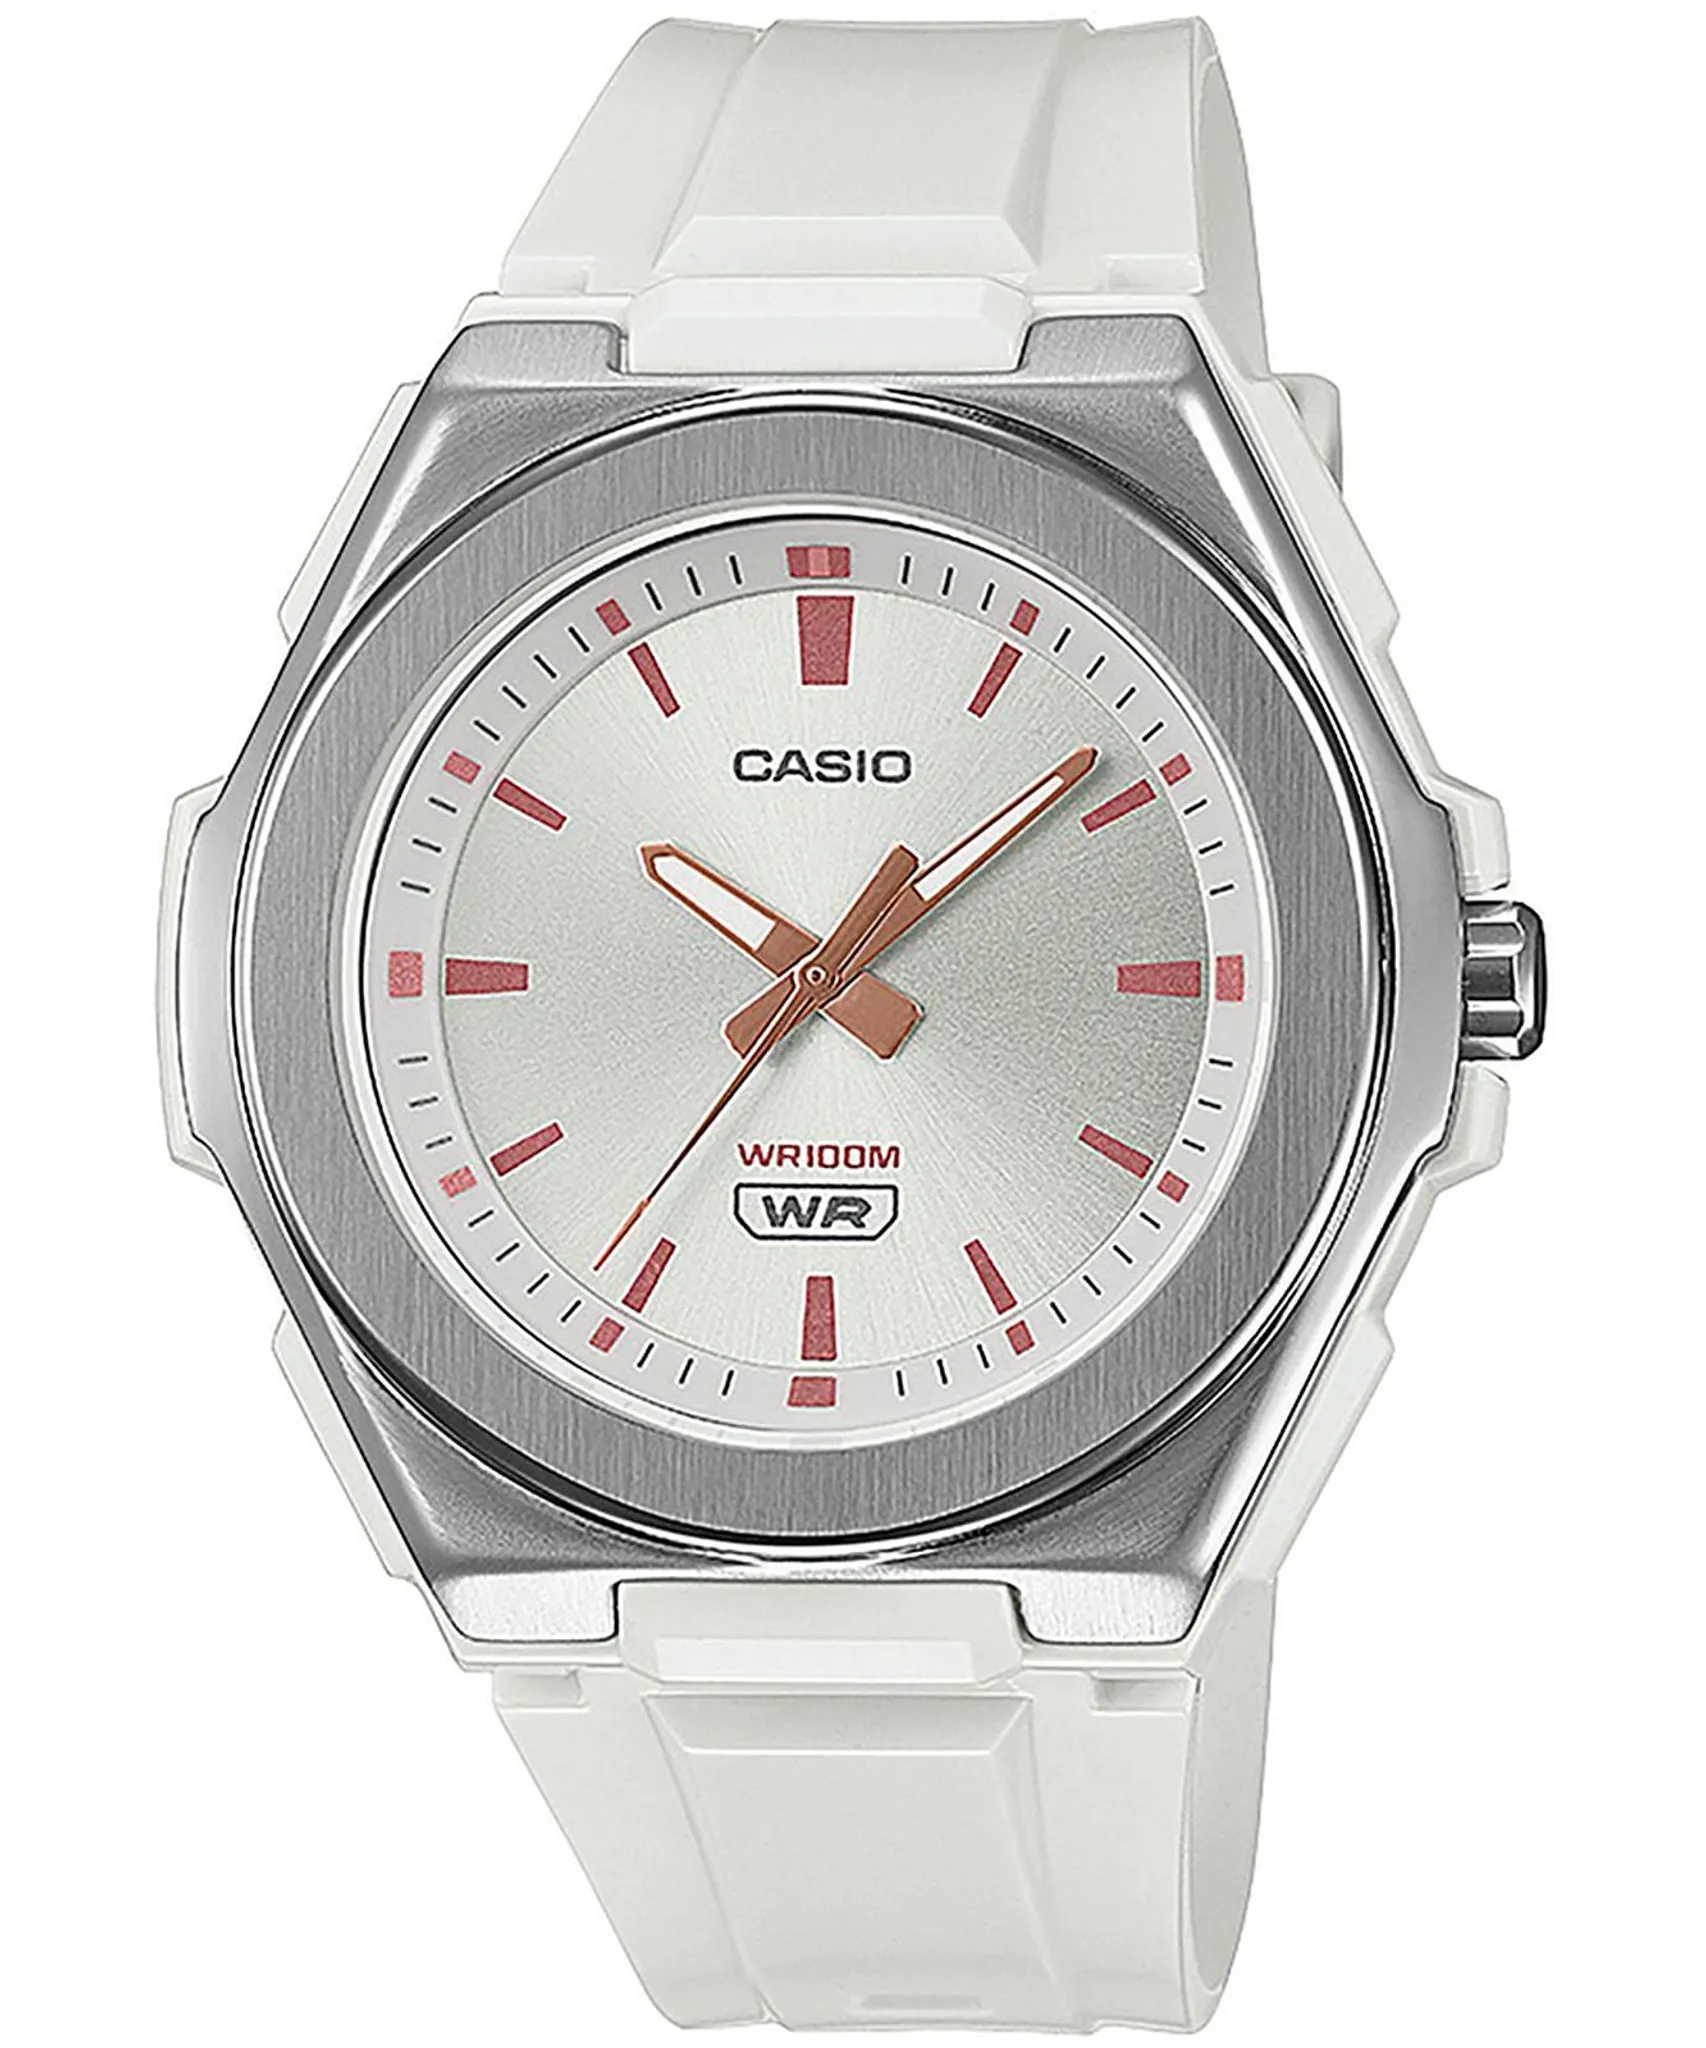 Damen Uhr Casio LWA-300H-7EVEF Collection